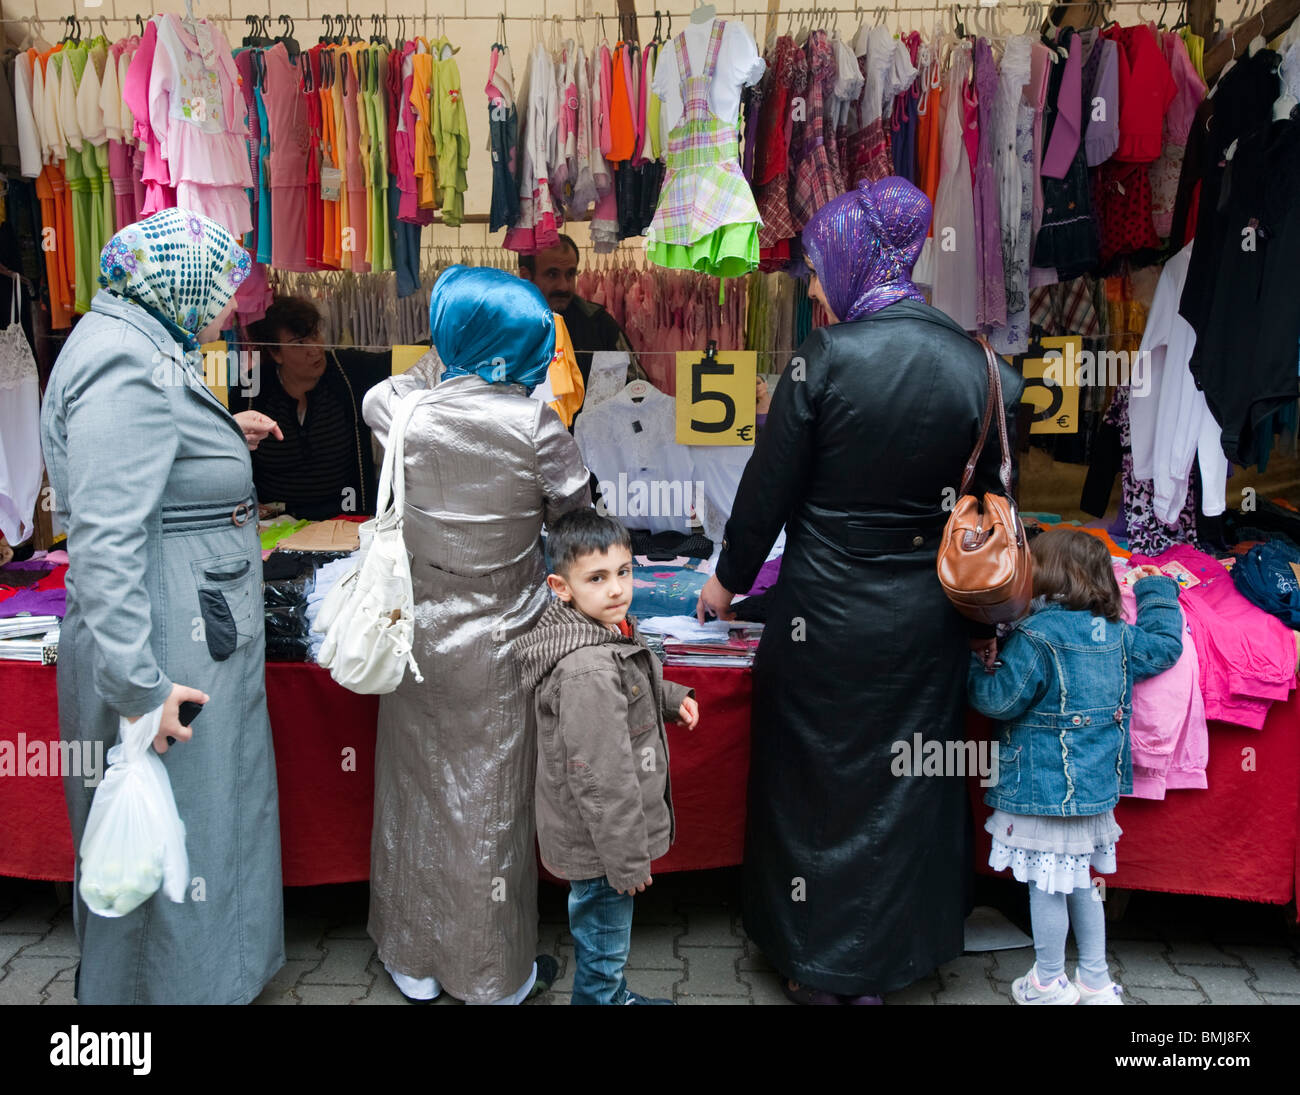 Türkische Frauen Kopftücher an türkischer Markt am Maybachufer in Kreuzberg  in Berlin Deutschland kaufen Stockfotografie - Alamy